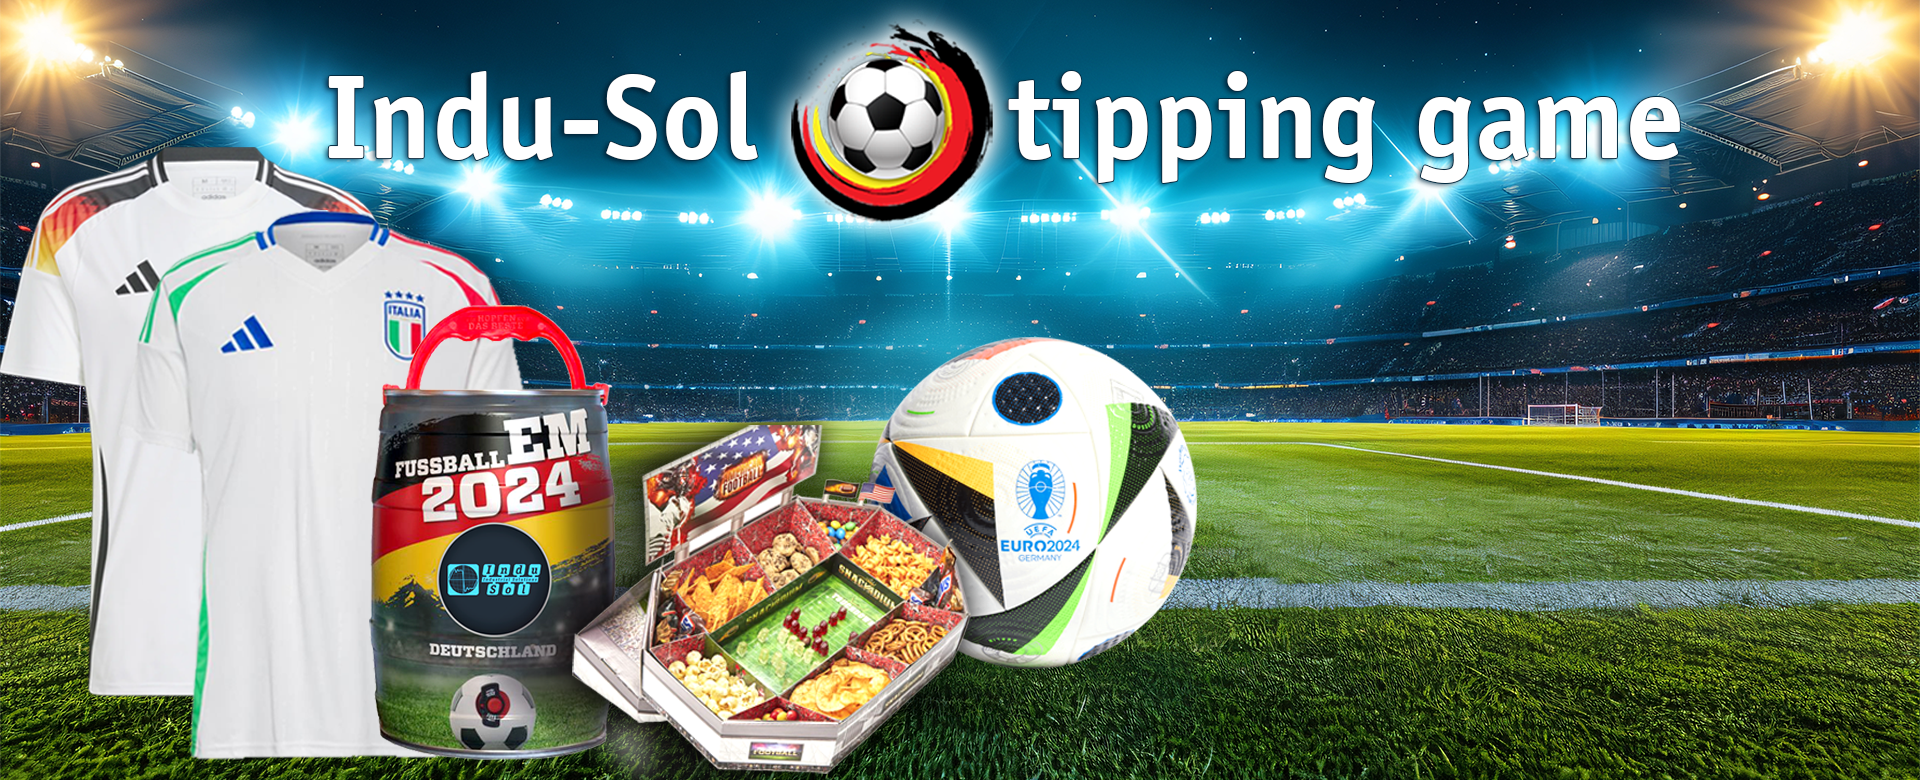 Indu-Sol European Championship 2024 tipping game